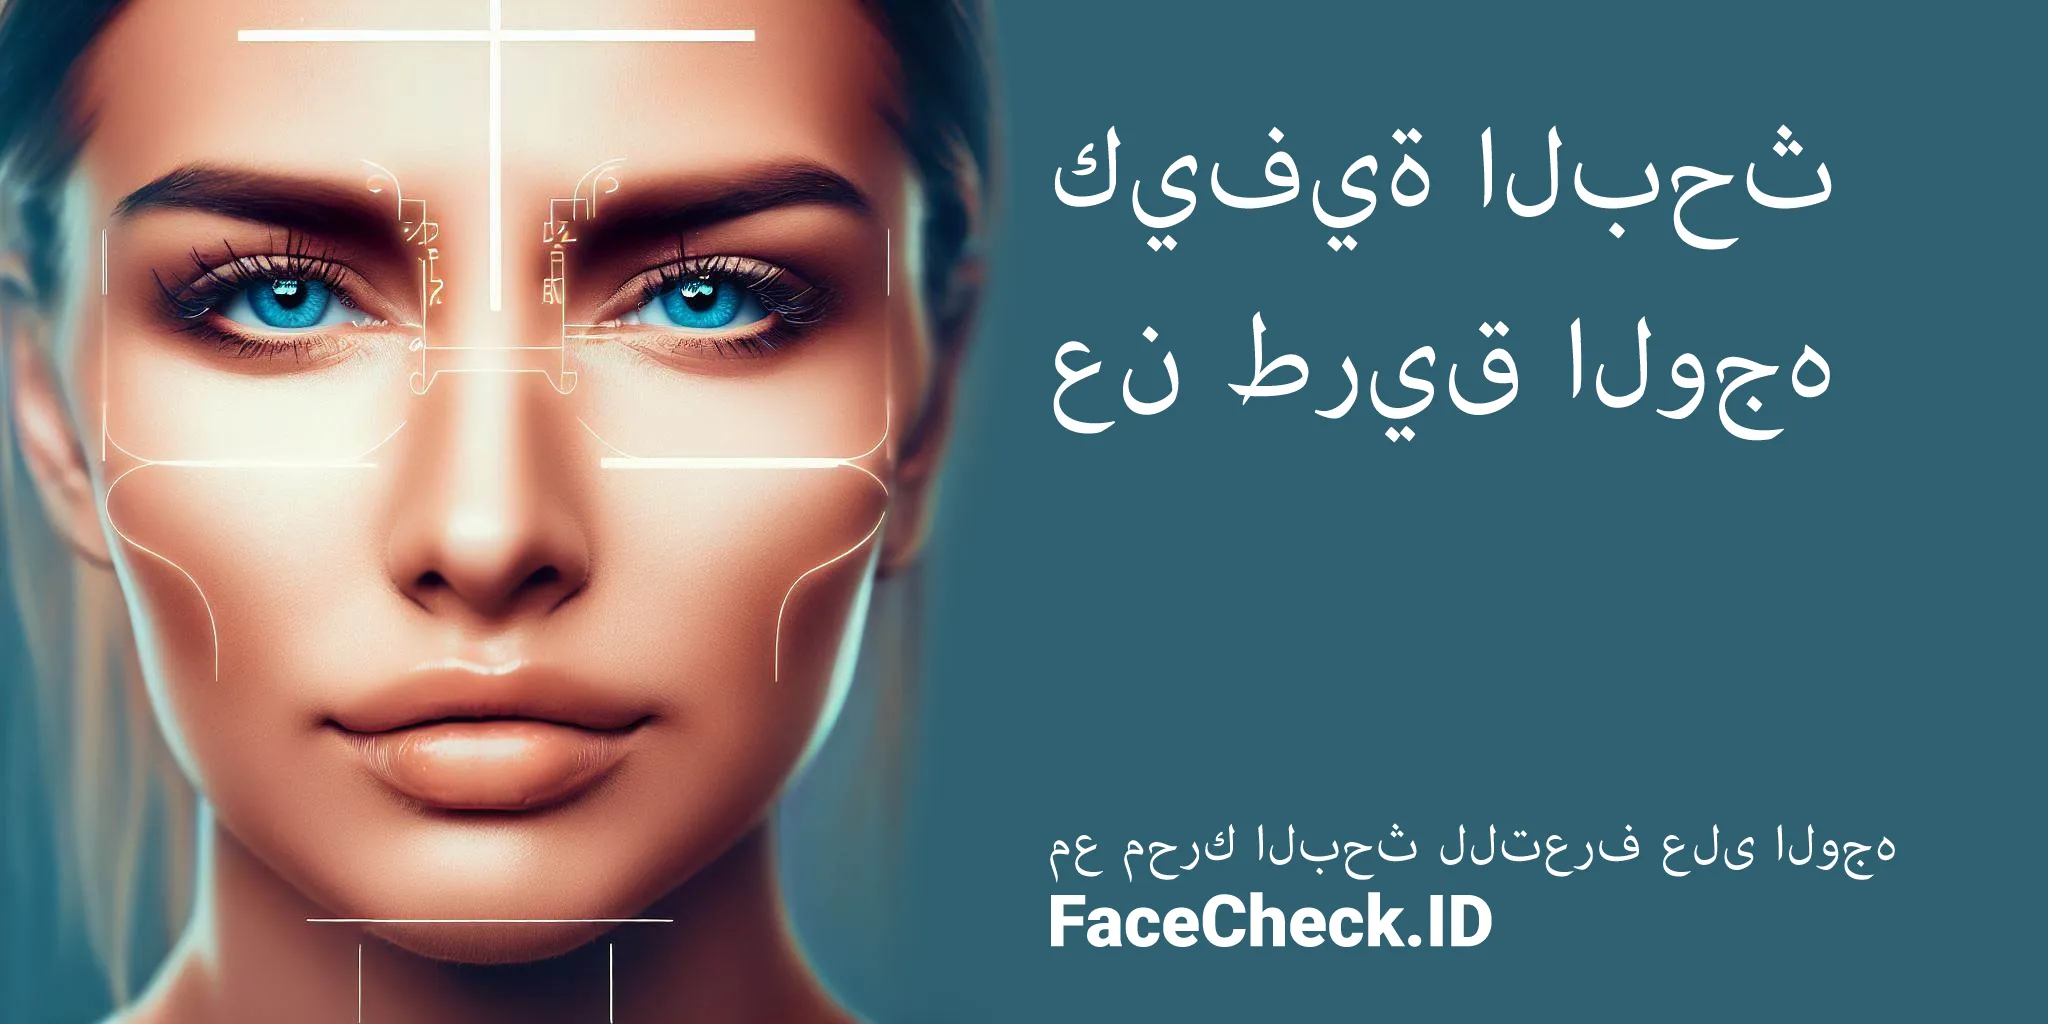 البحث عن طريق الوجه للعثور على ملفات التواصل الاجتماعي